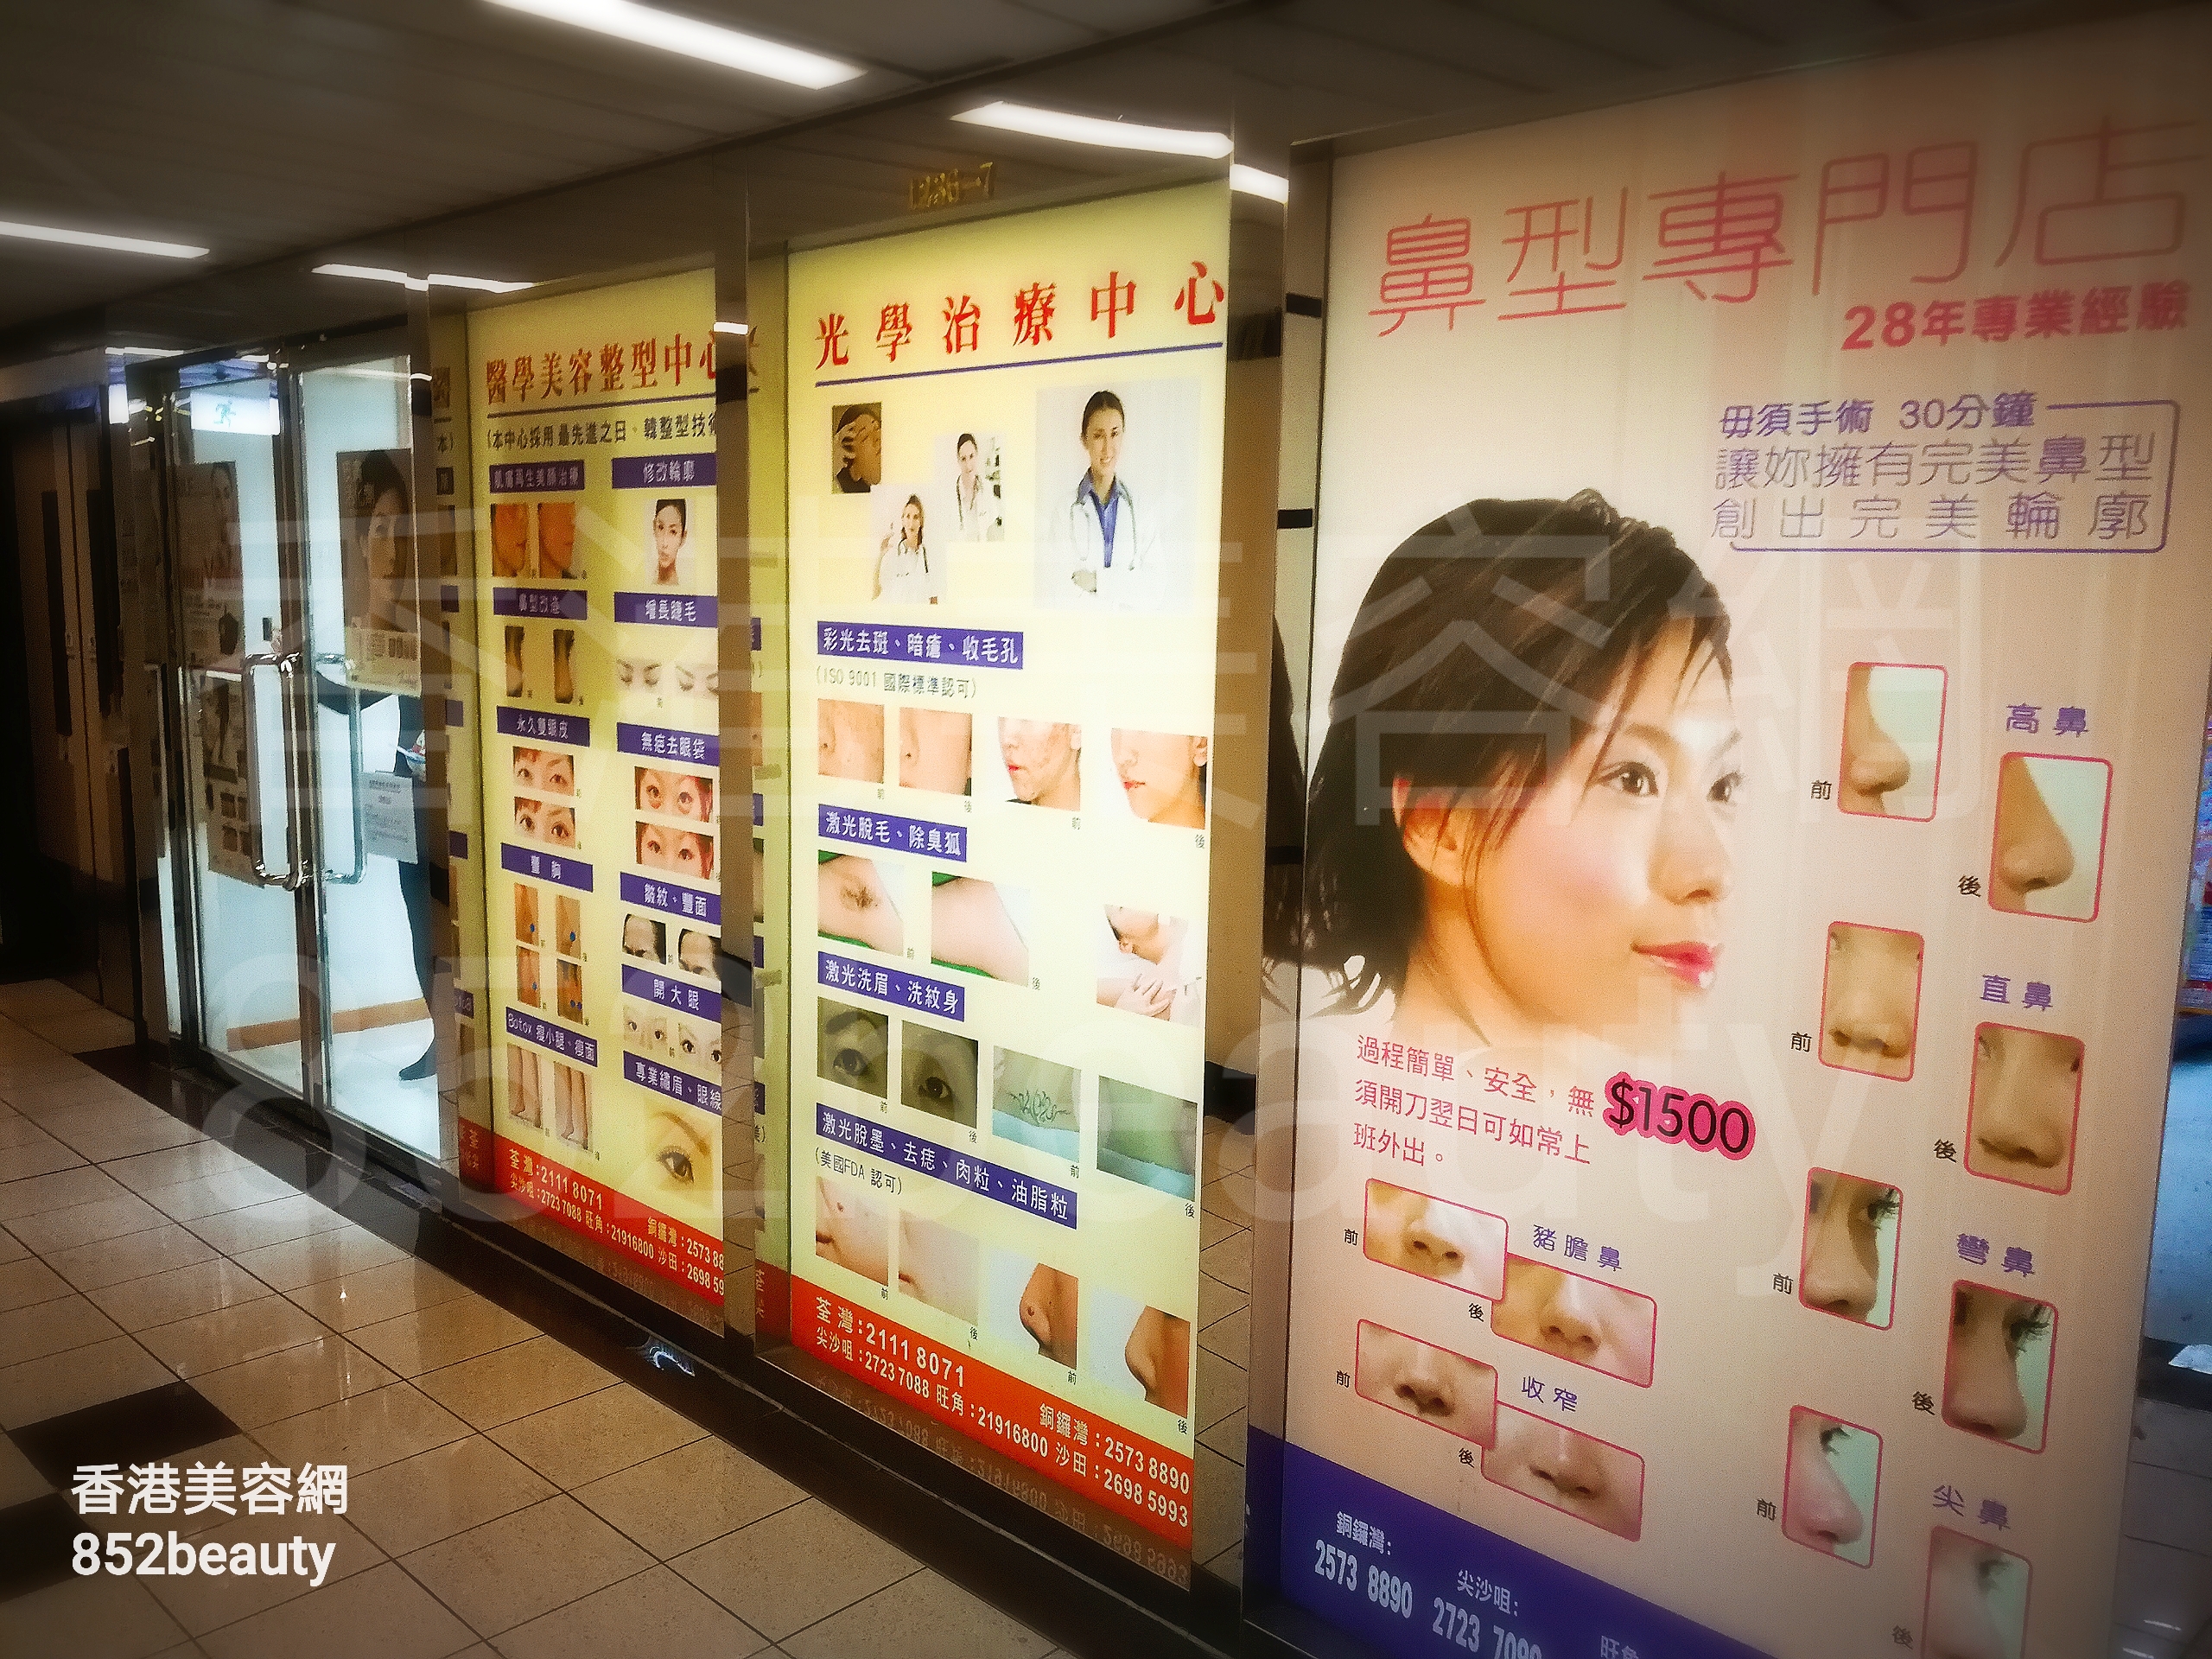 香港美容網 Hong Kong Beauty Salon 美容院 / 美容師: 歐洲國際容貌協會 Europe Beauty (荃灣店)